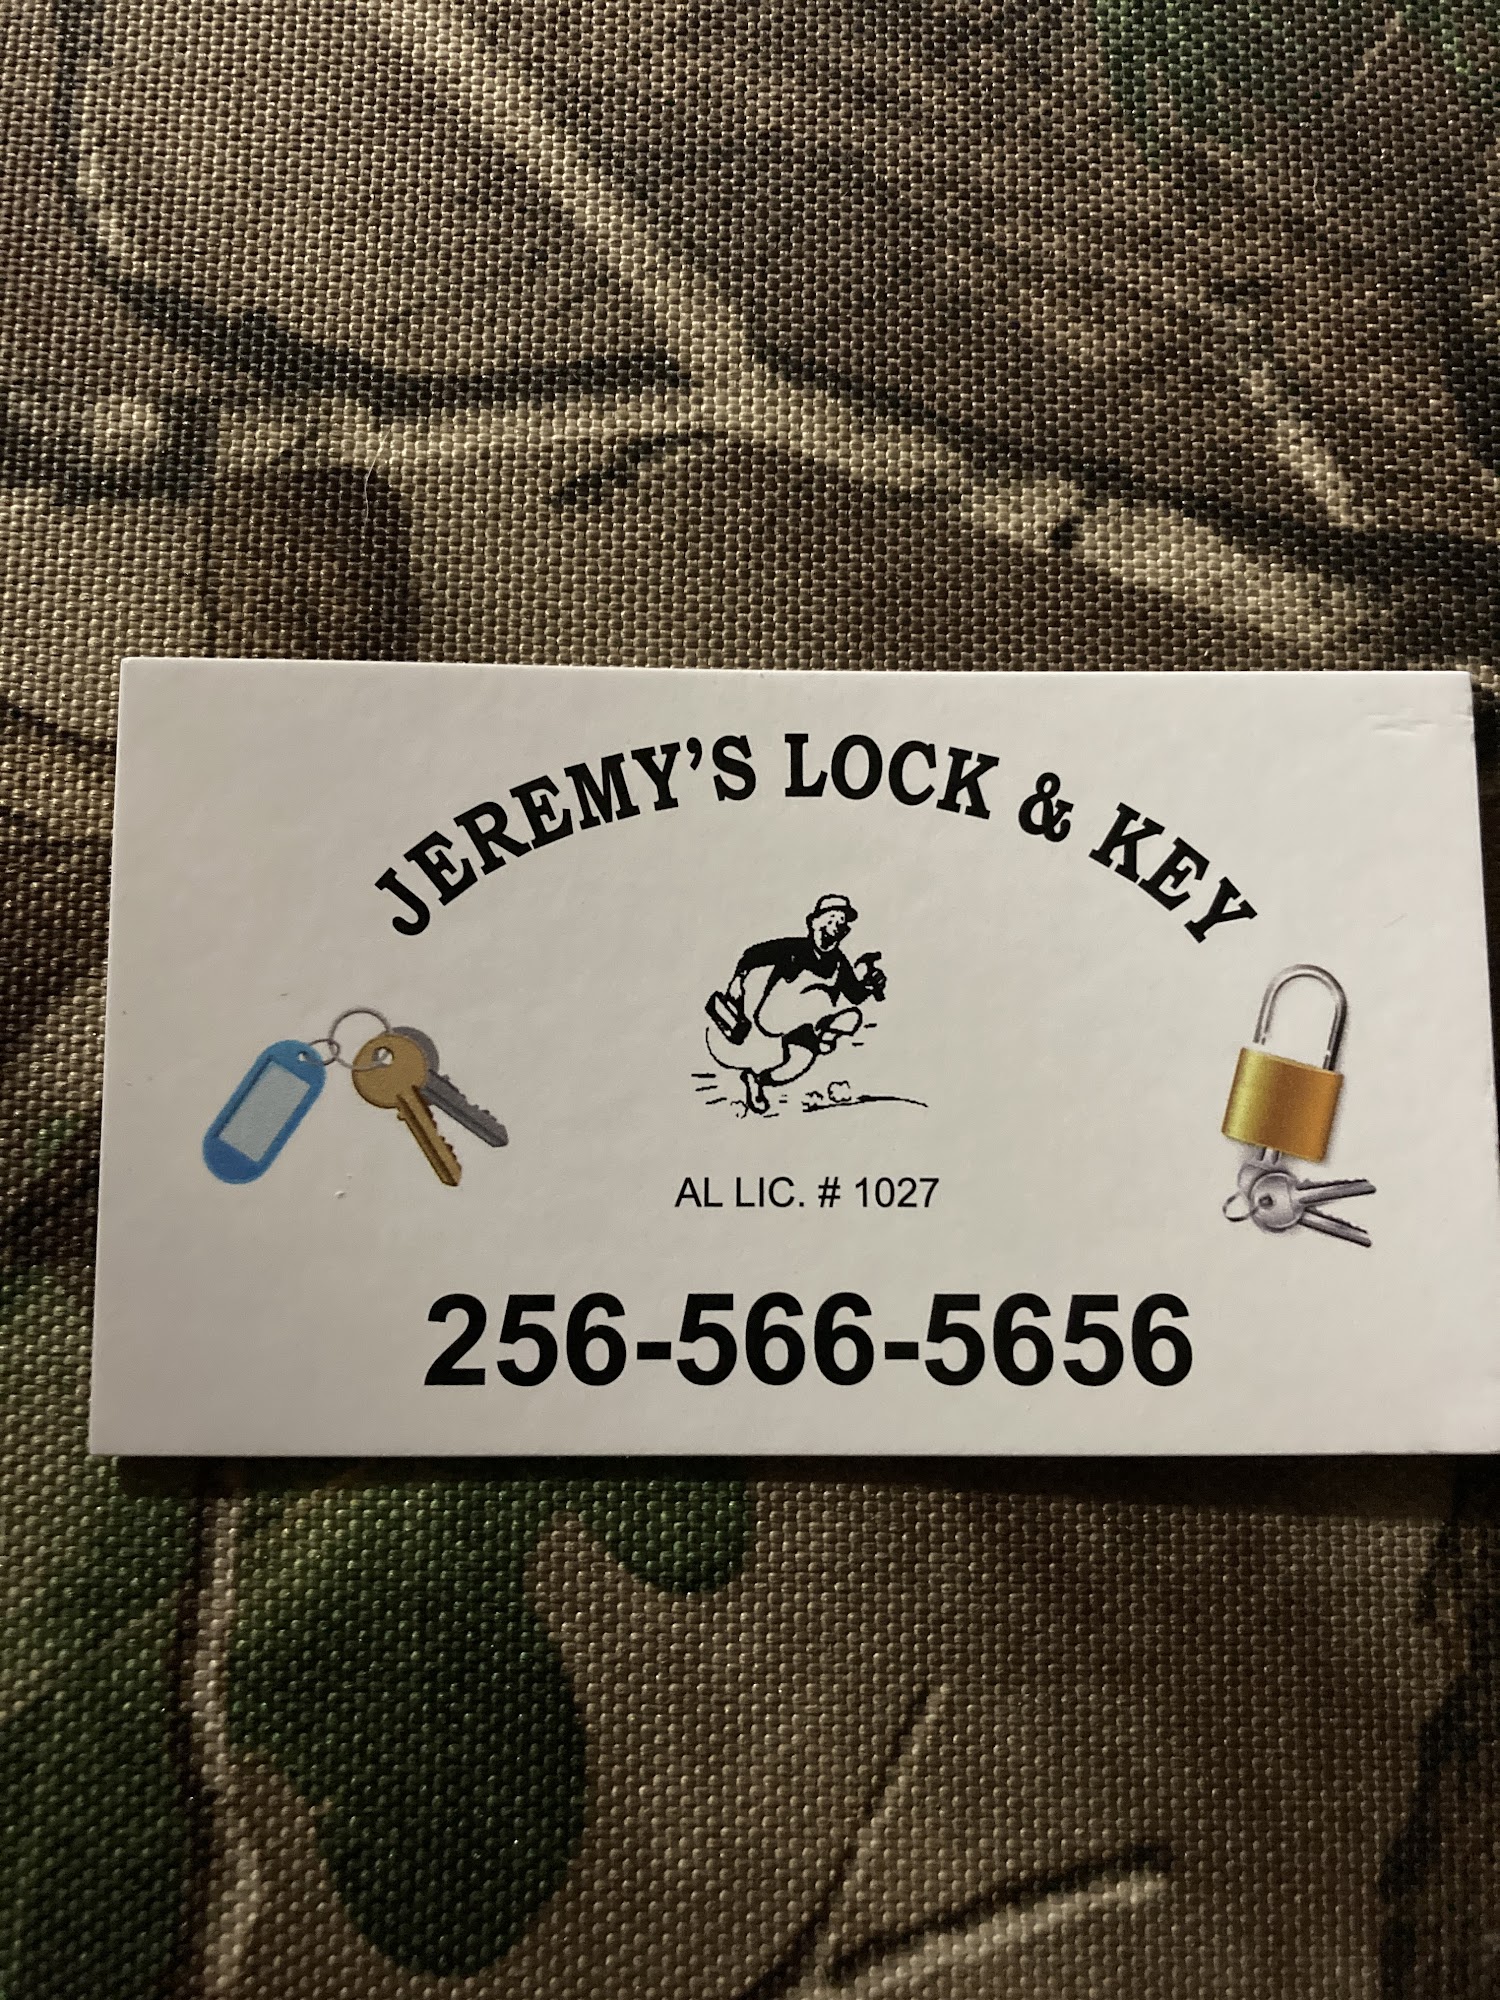 Jeremy's Lock & Key 14369 Court St, Moulton Alabama 35650